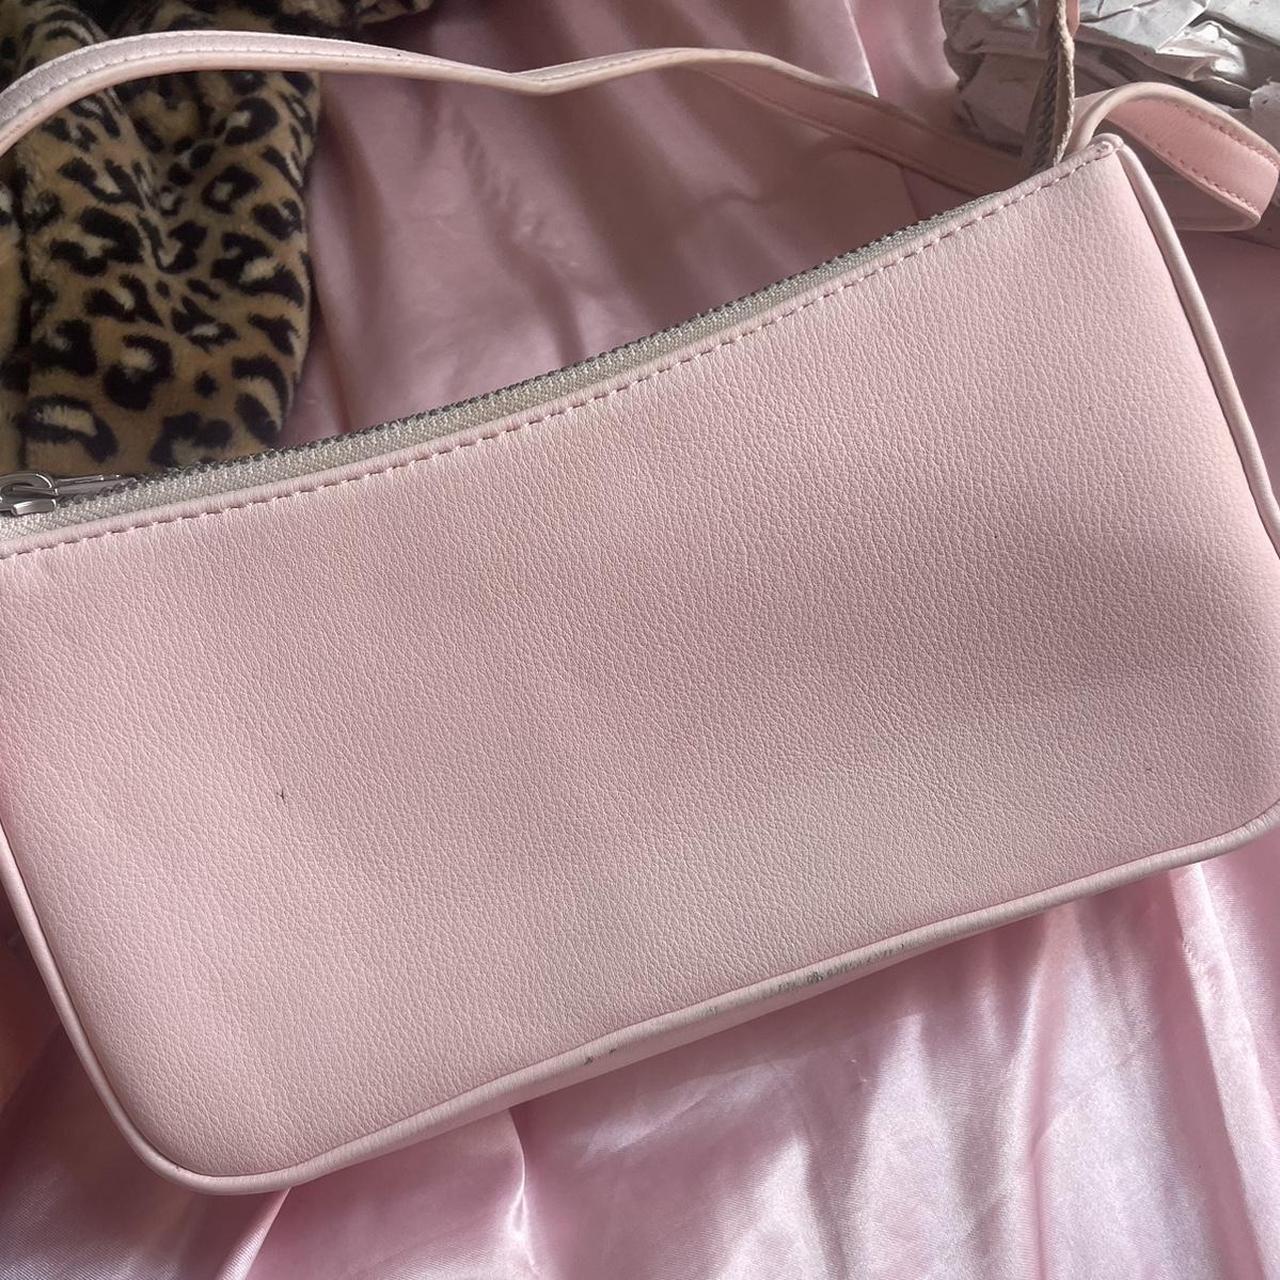 Coquette light/ baby pink shoulder bag so adorable... - Depop